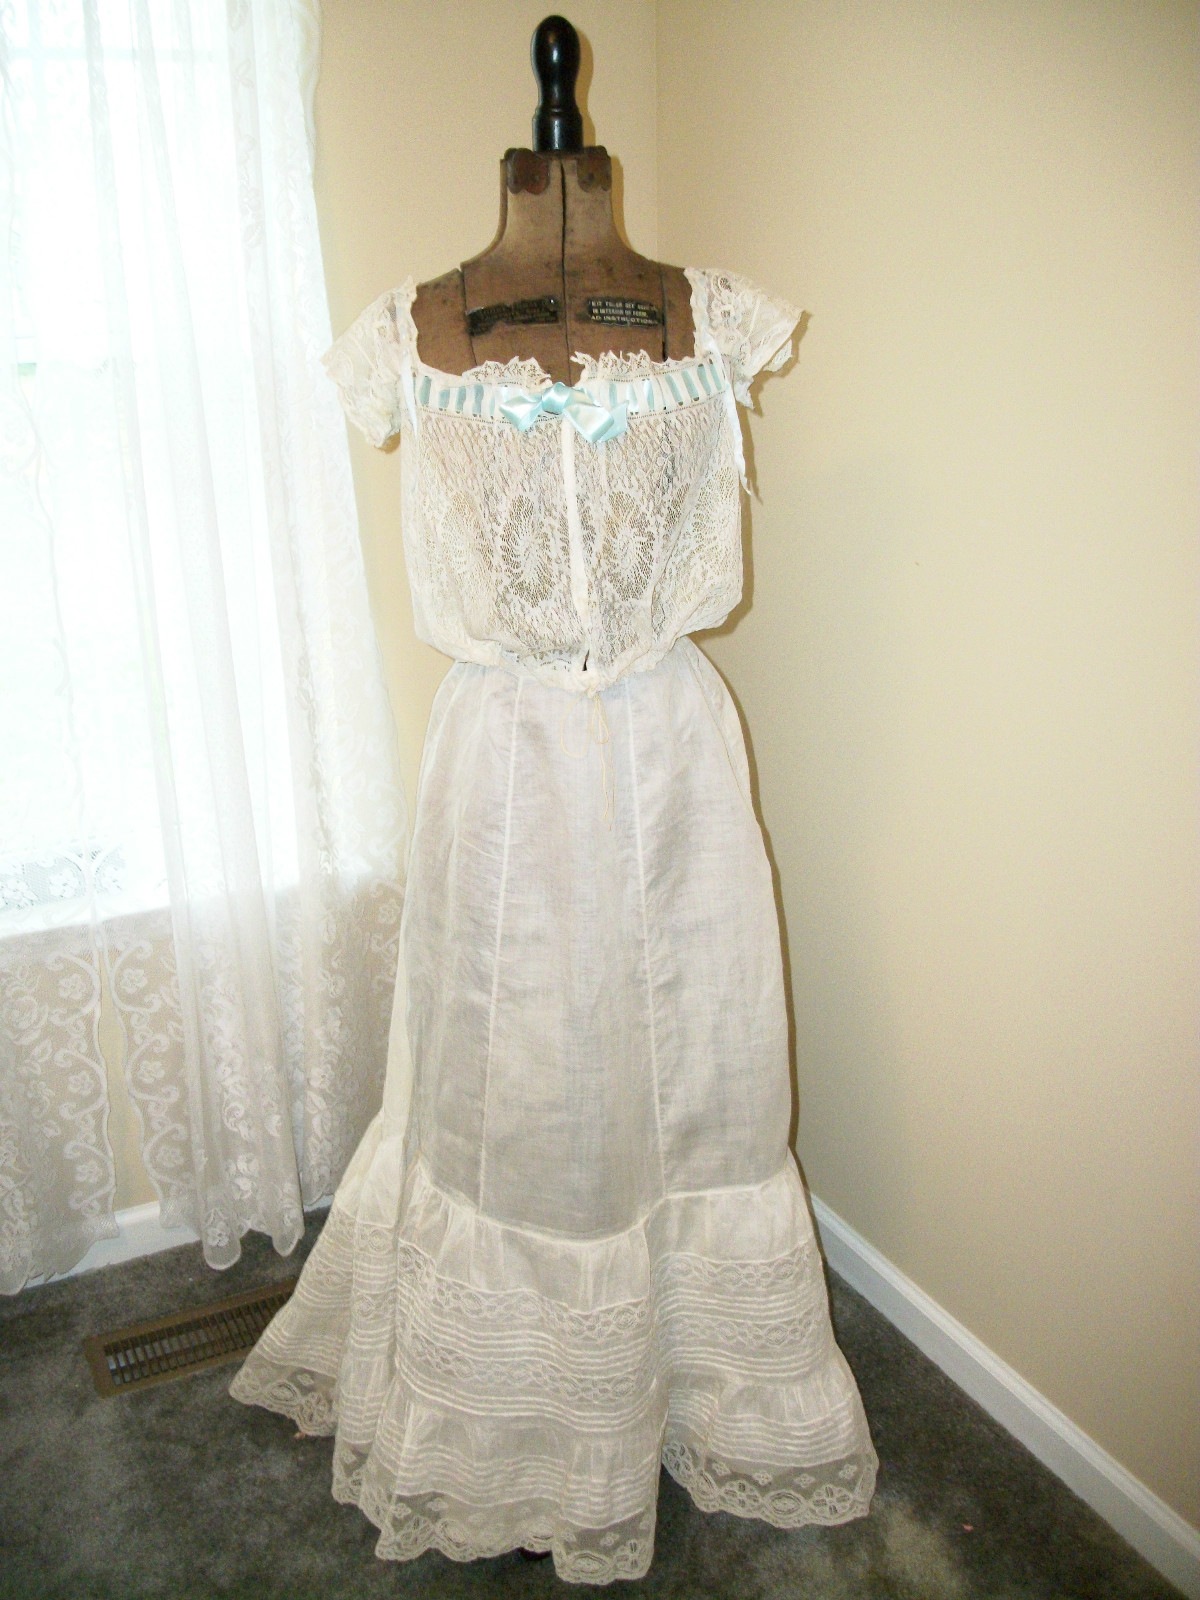 All The Pretty Dresses: 1900's Petticoat and Corset Cover